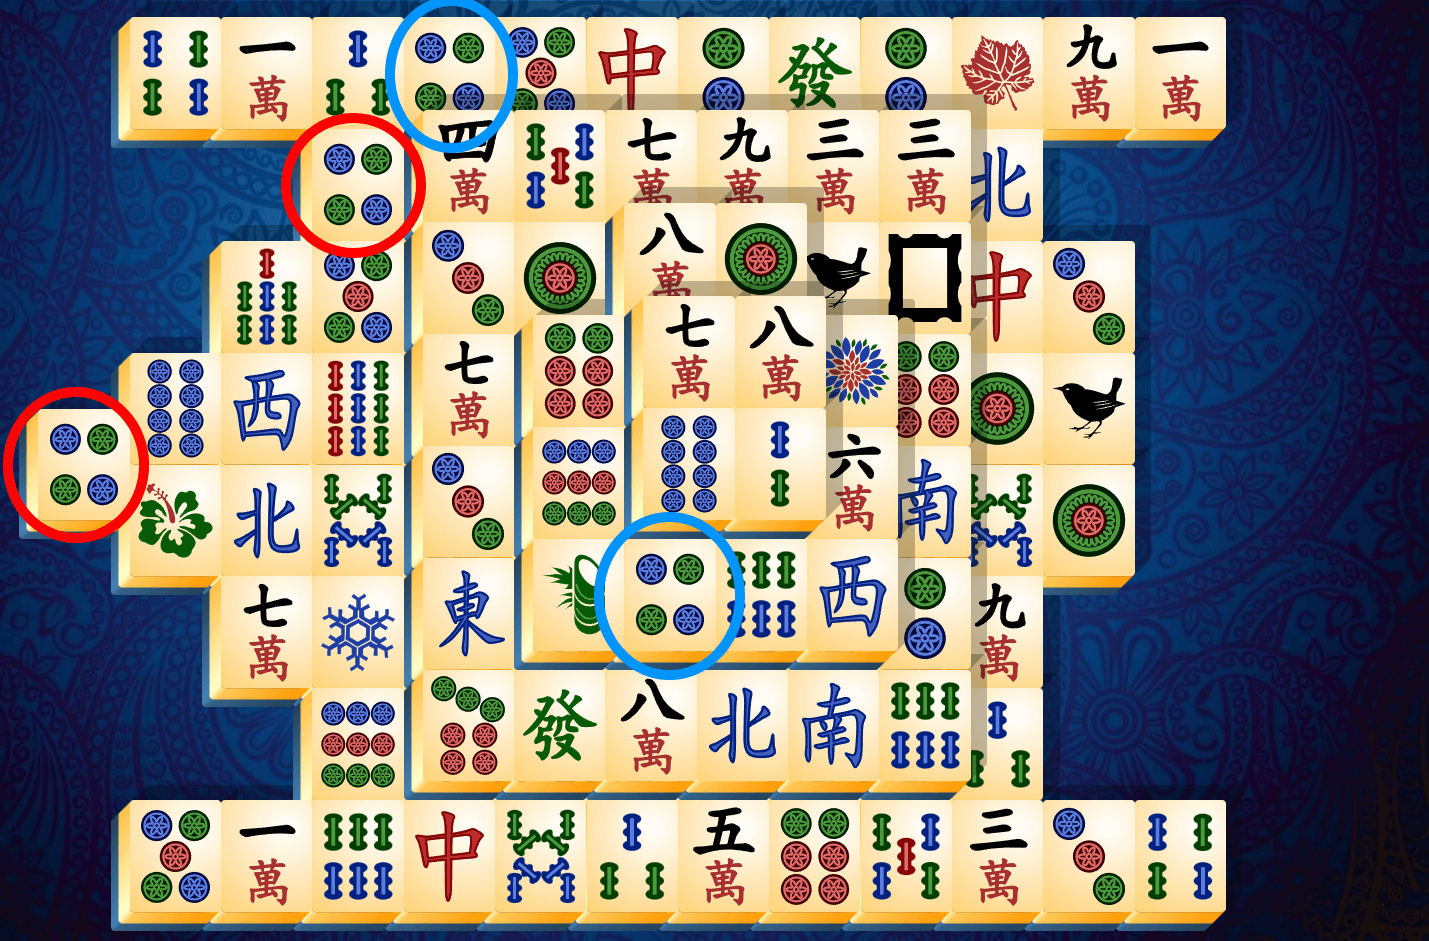 Anleitung zu Mahjong Solitär, Schritt 4